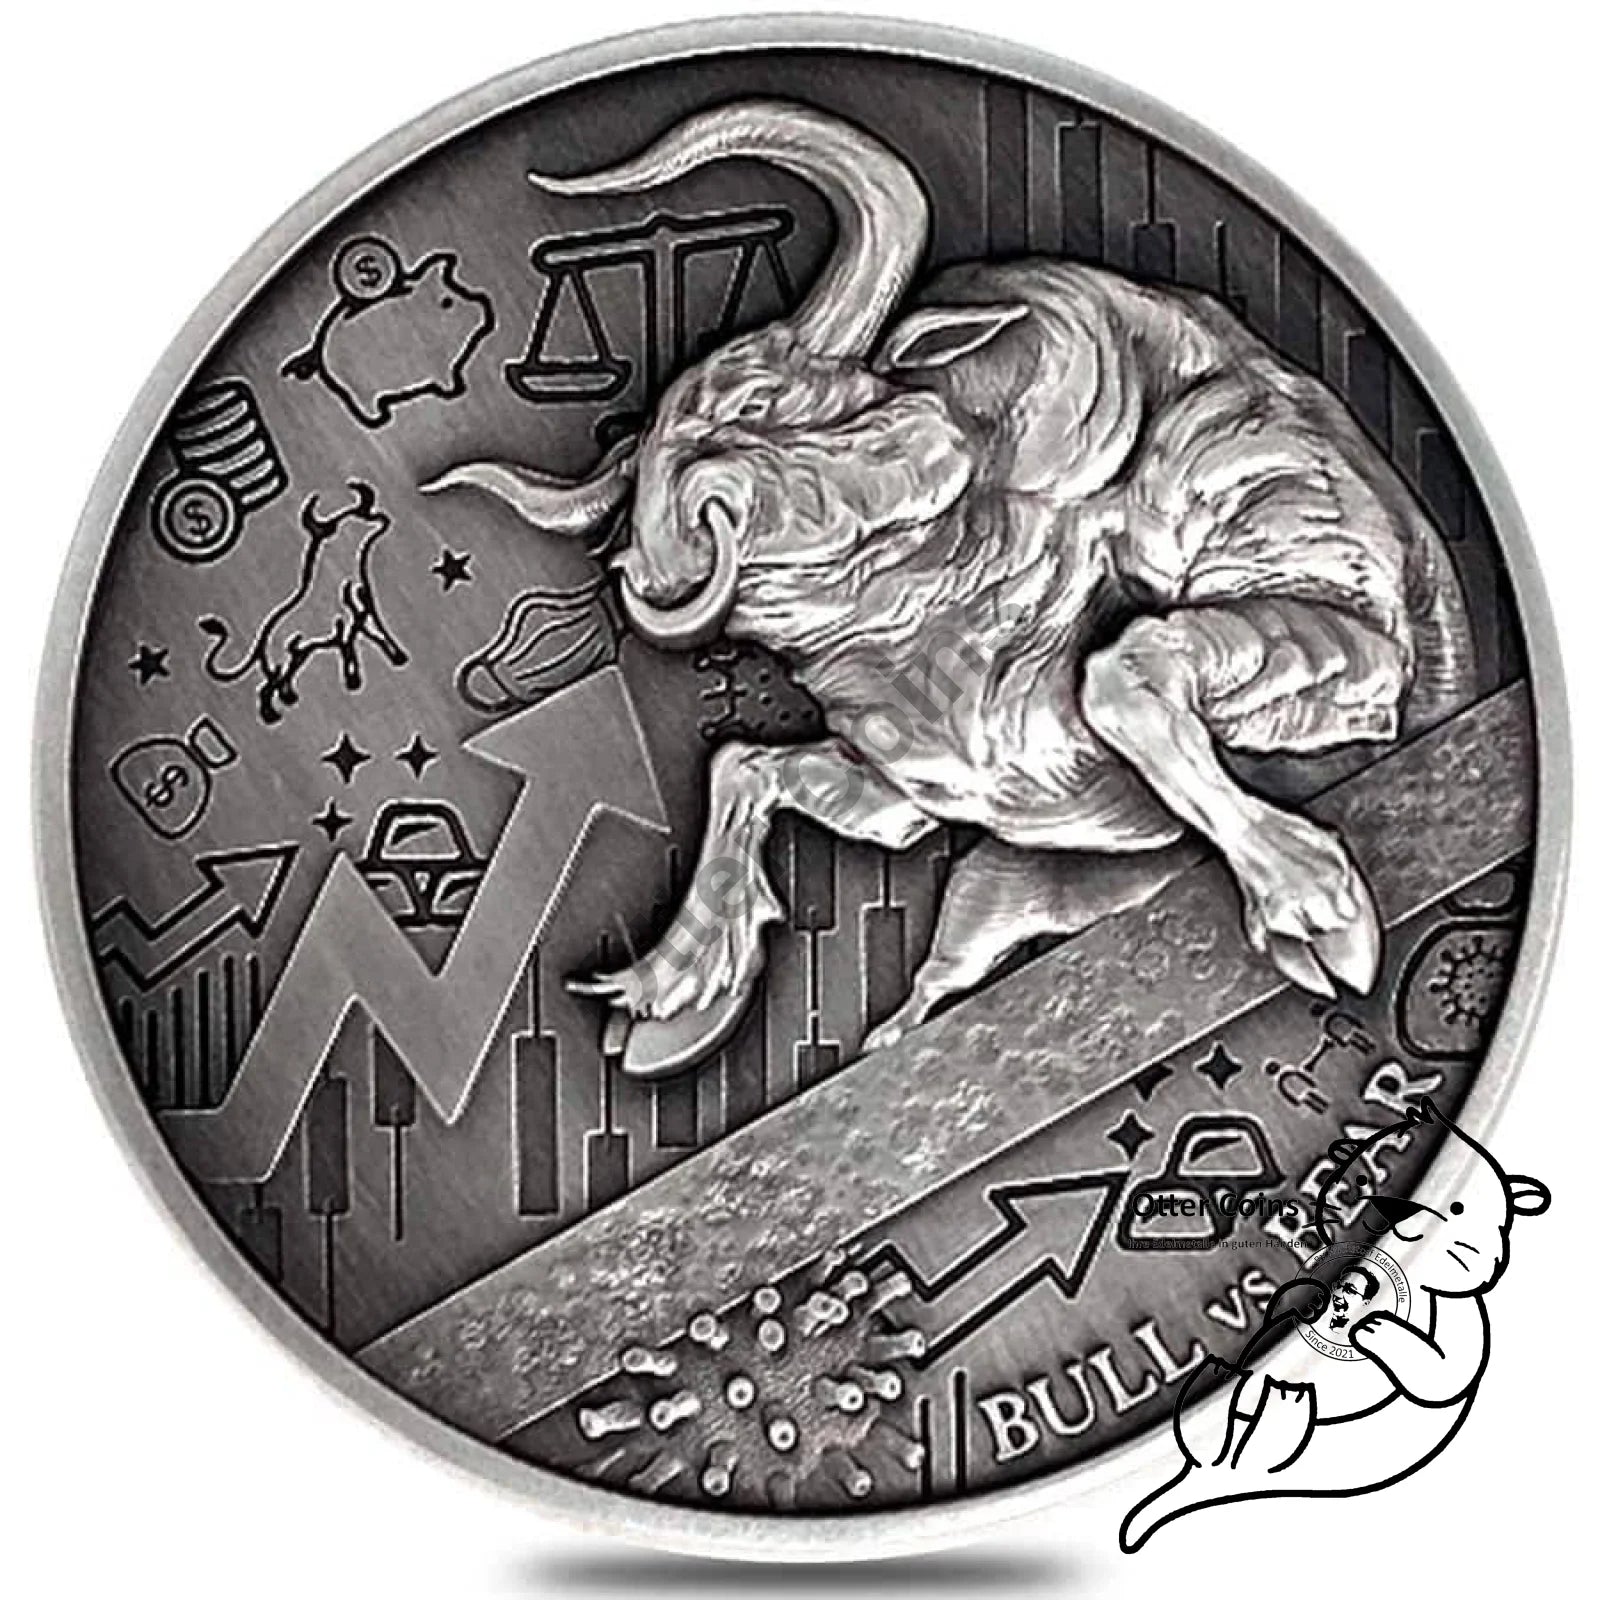 Chad 2 oz Silber Bull vs. Bear Antik High Relief Coin 2021